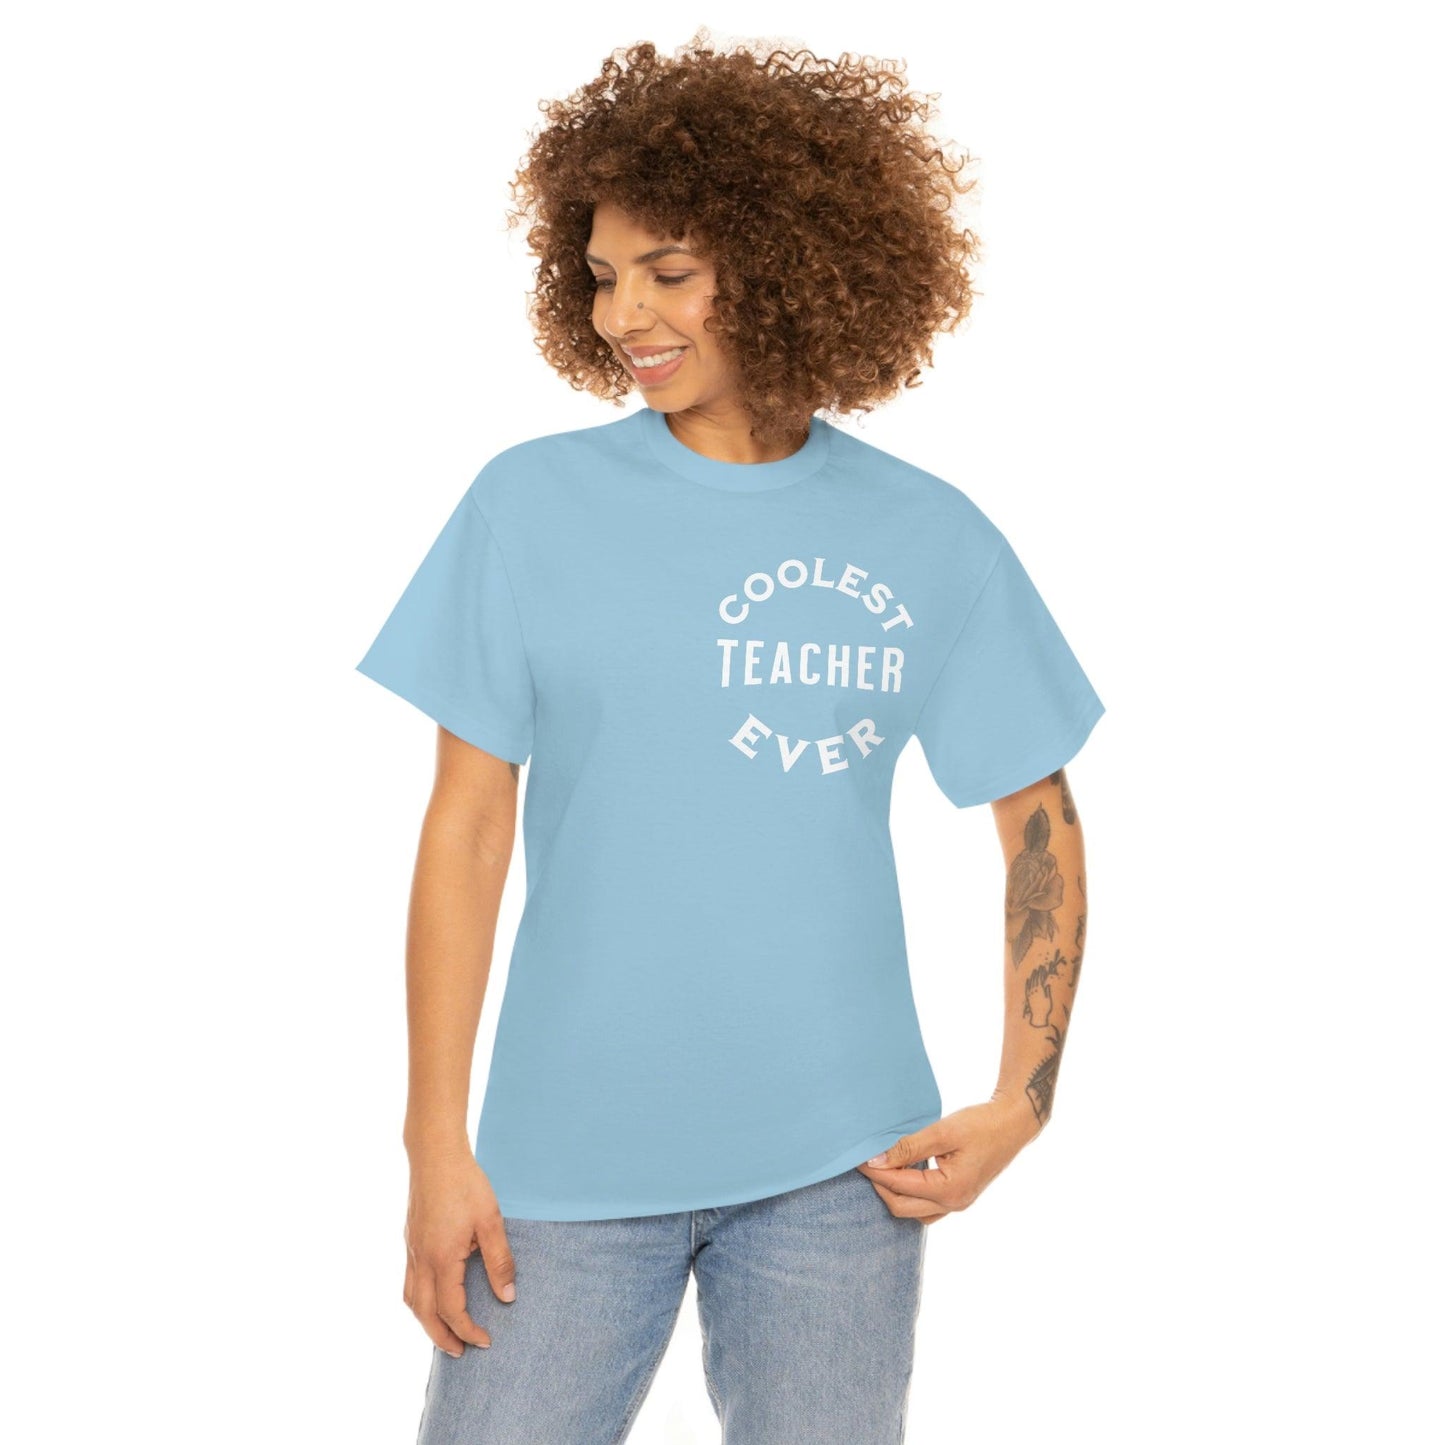 Coolest Teacher Ever Shirt - gift for teachers - teacher appreciation gift